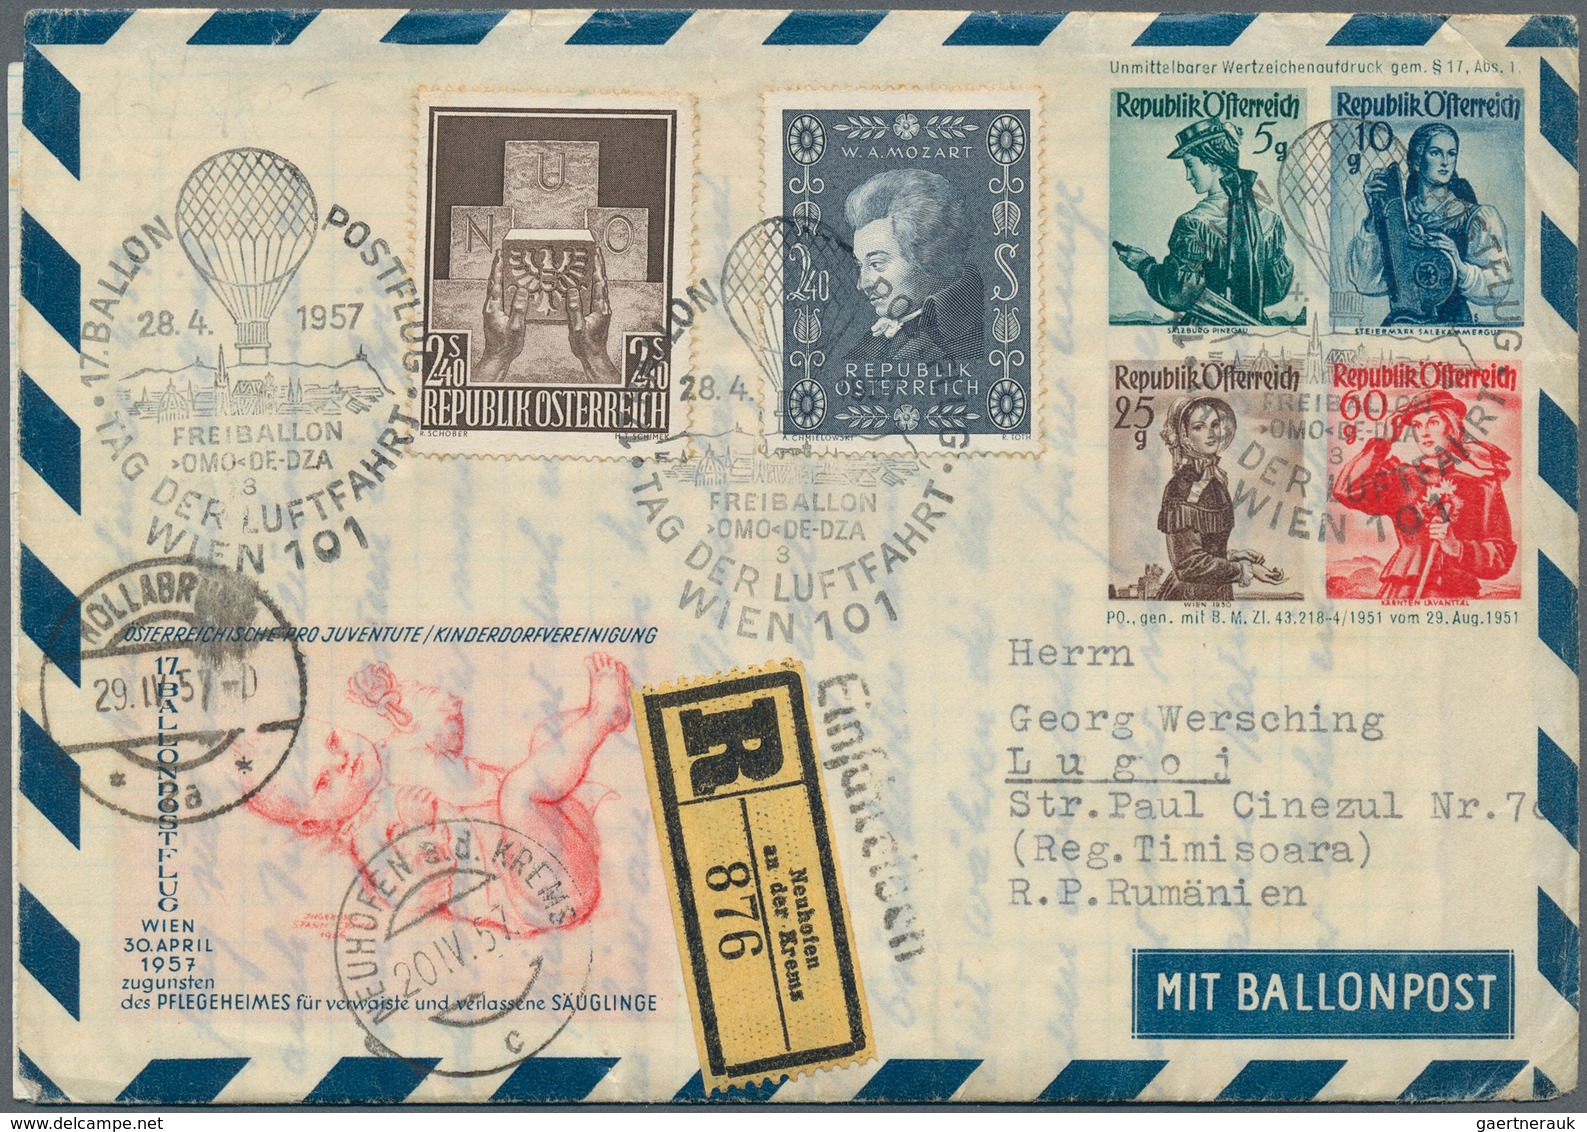 Ballonpost: 1948/2001, Umfangreiche Sammlung Von Ca. 480 Belegen Der österreichischen Kinderdorf-Bal - Airships